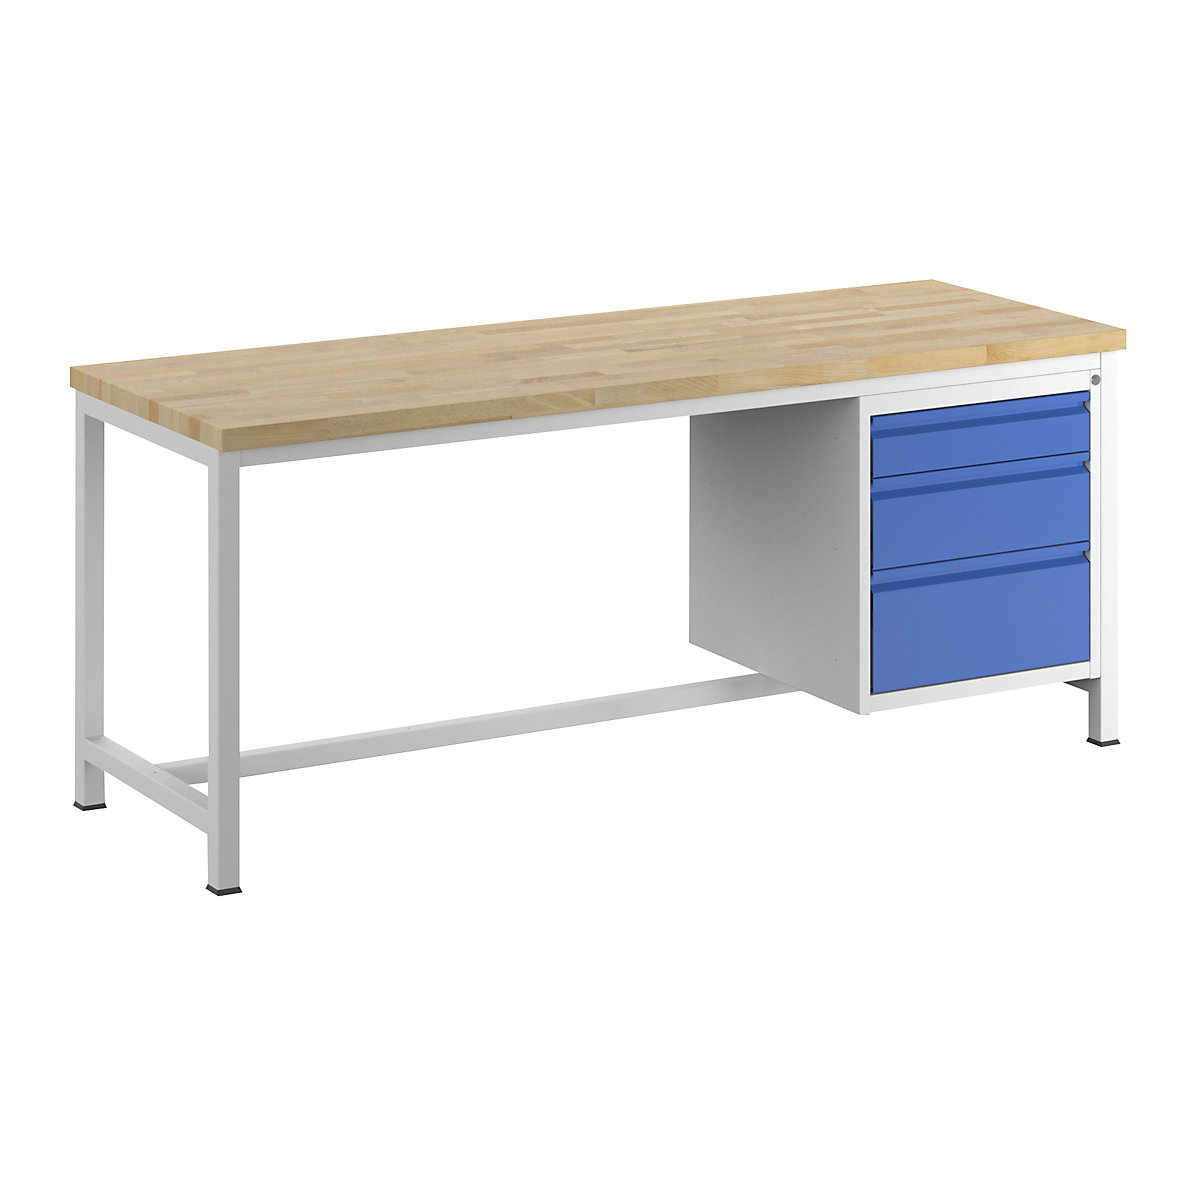 Stół warsztatowy, konstrukcja ramowa – RAU, 3 szuflady rozmiaru L, wys. po 1 x 120/180/240 mm, głęb. 700 mm, szer. 2000 mm-14